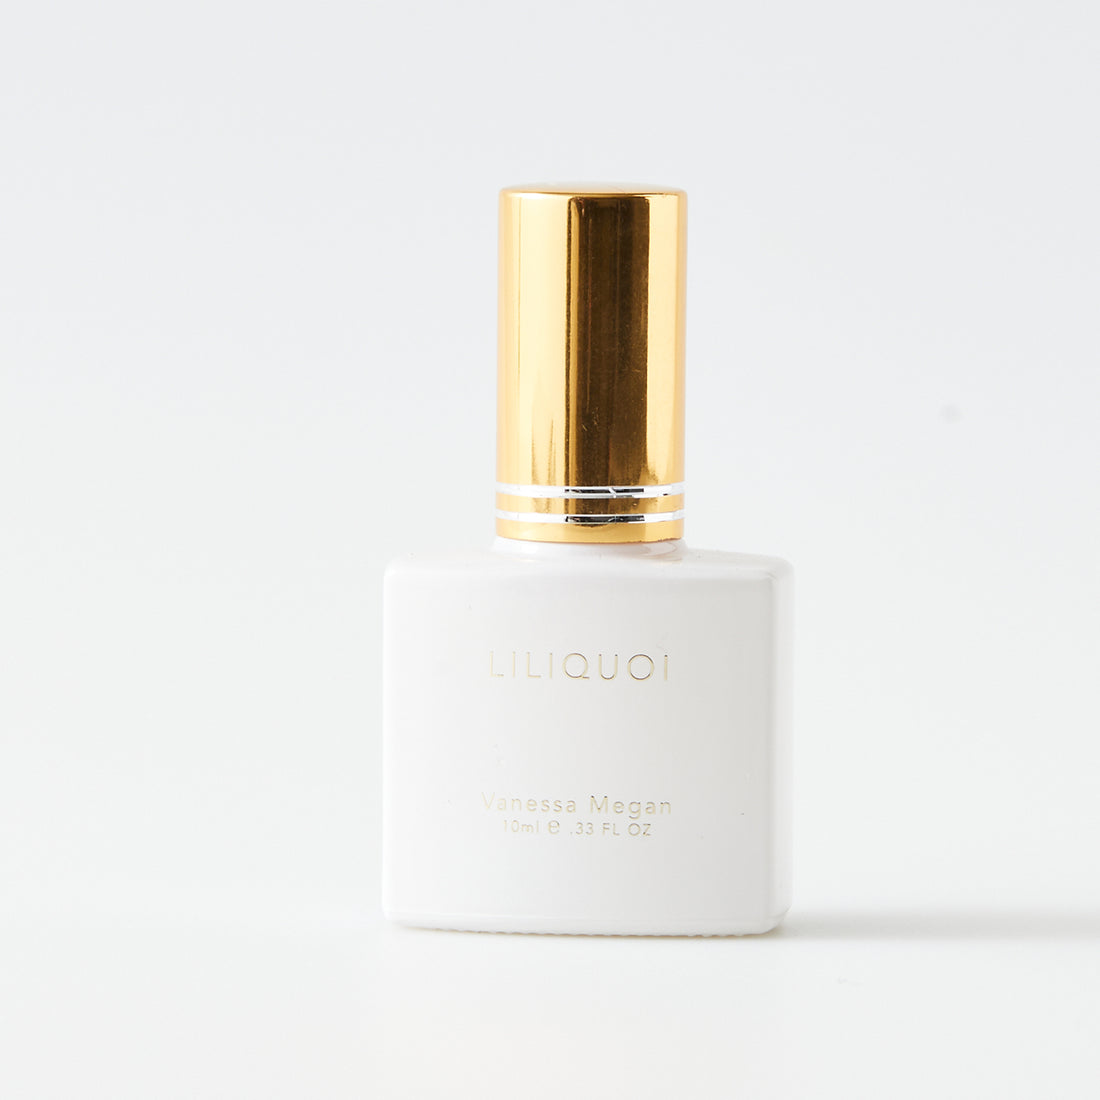 Vanessa Megan Liliquoi 10ml natural perfume 